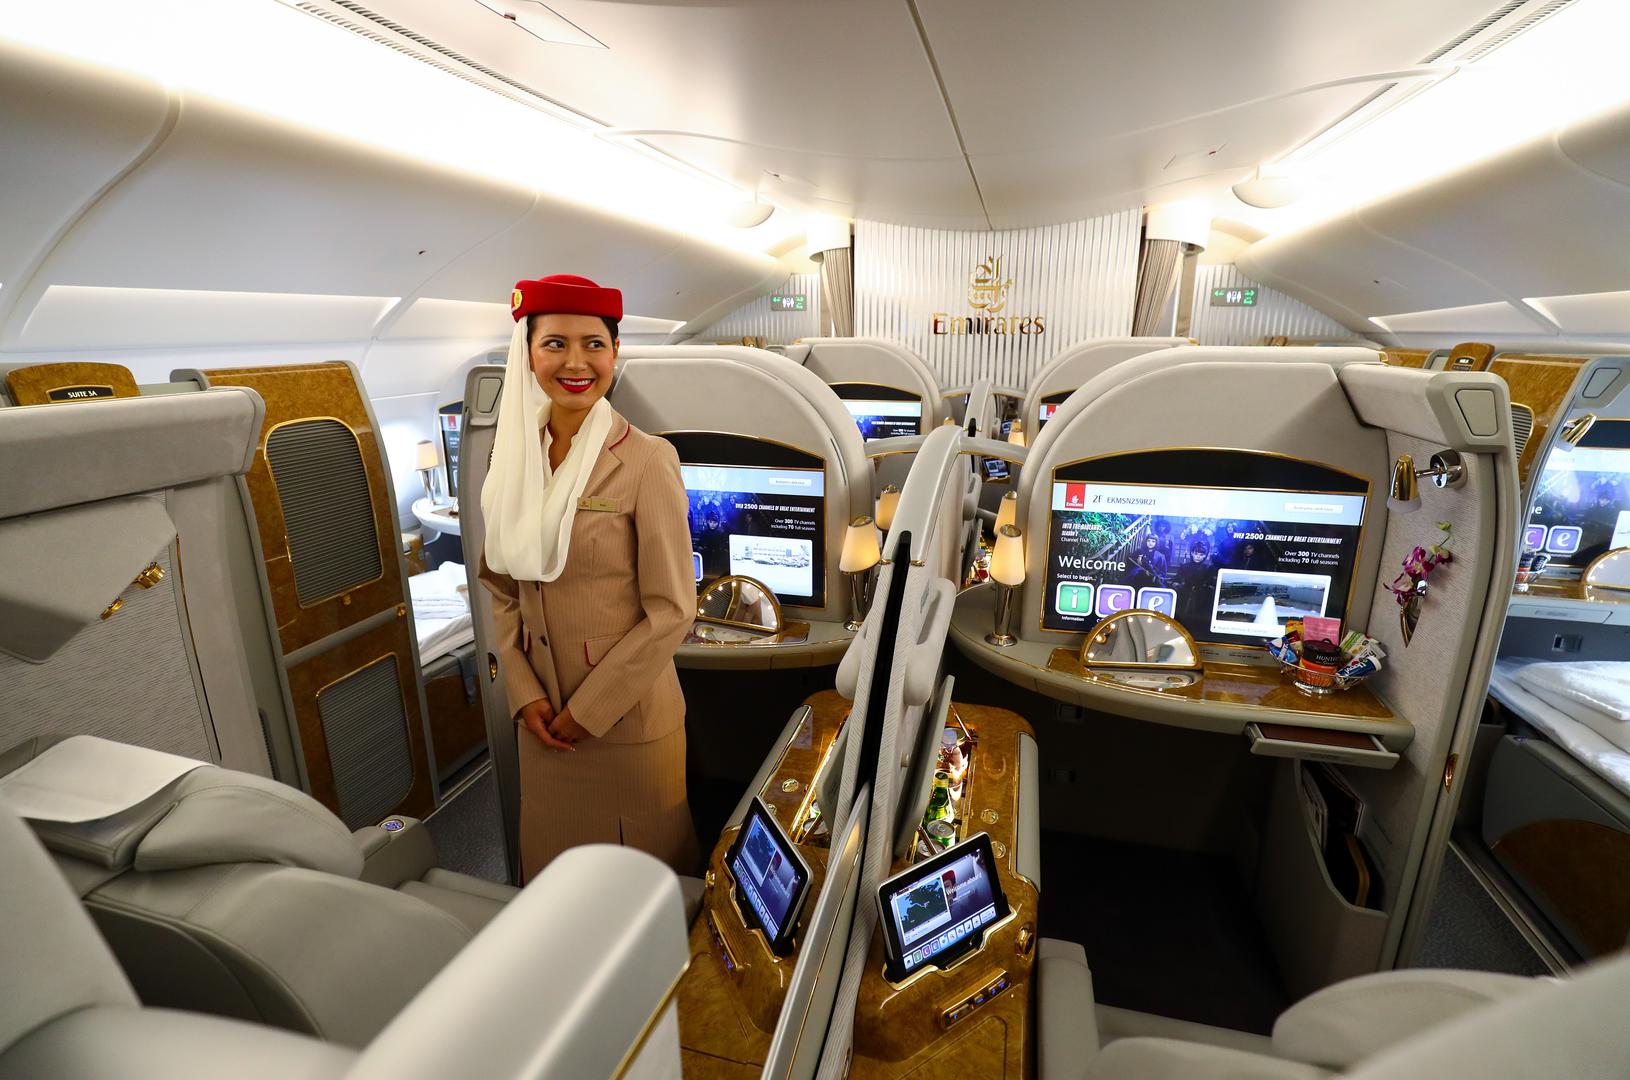 Emirates u svojoj floti ima 270 zrakoplova, i to Boeing 777 i Airbus 380, no flotu i broj destinacija stalno proširuje pa je i stalno u potrazi za novim članovima kabinskog osoblja. U toj kompaniji radi više od 135 nacionalnosti